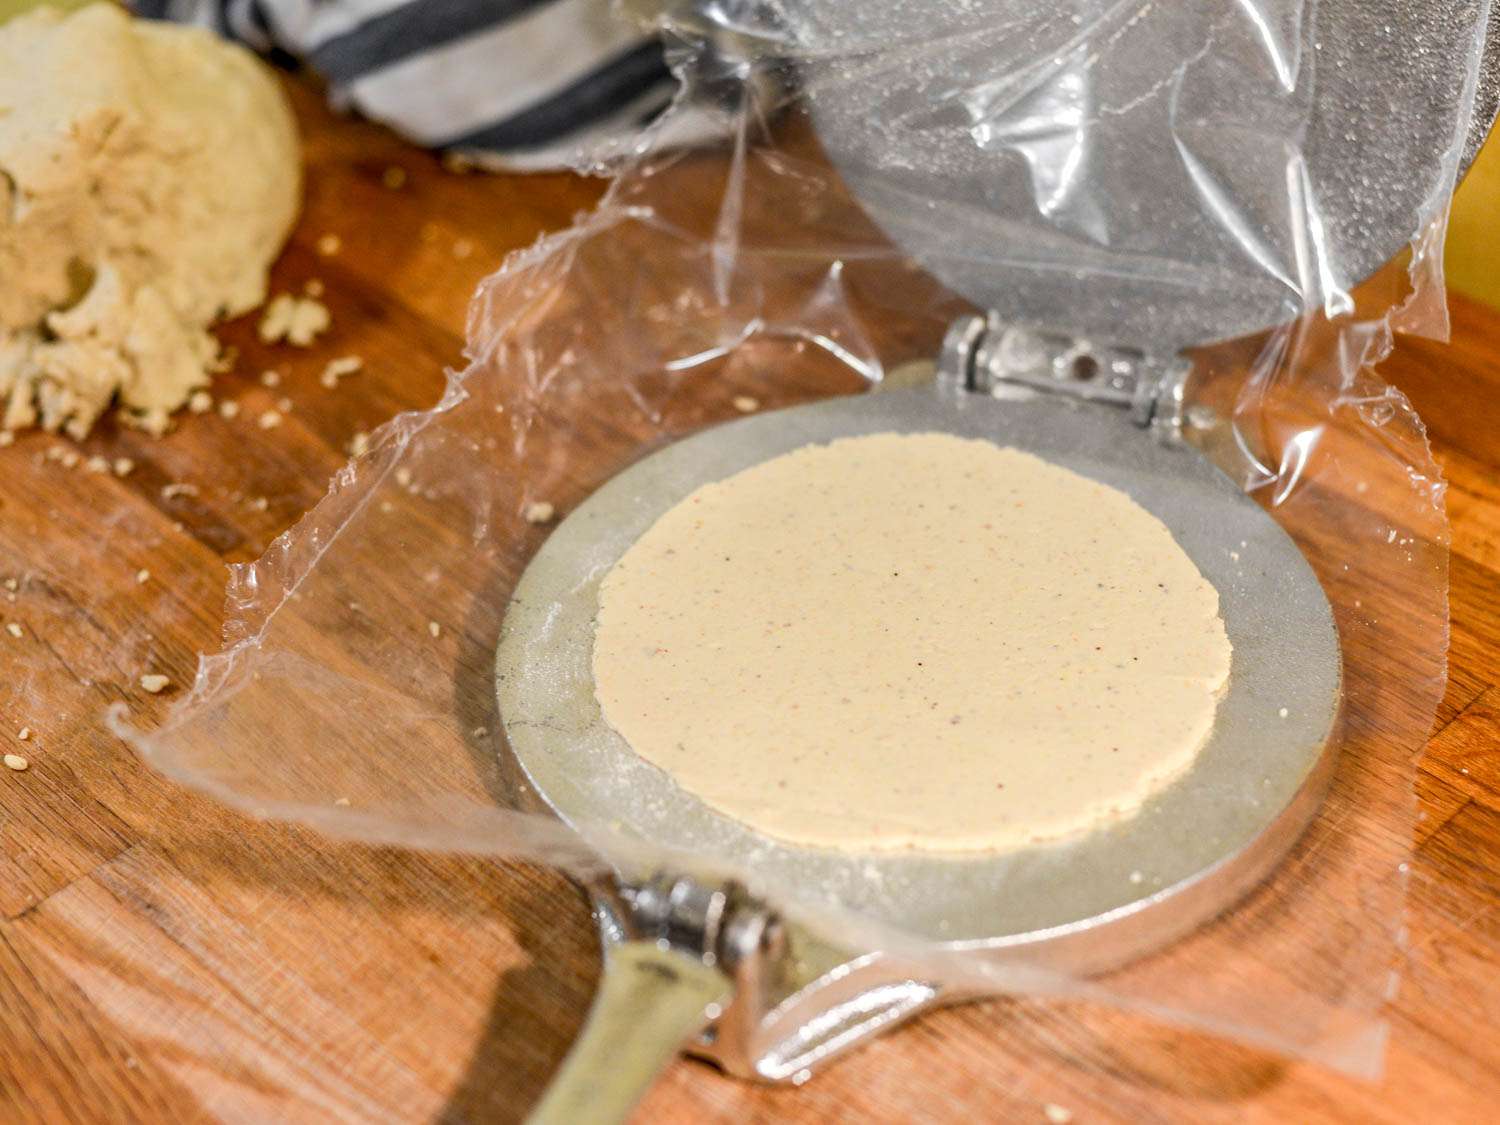 在玉米饼压榨机中压榨的玛莎面团制作圣安东尼奥式玉米饼。